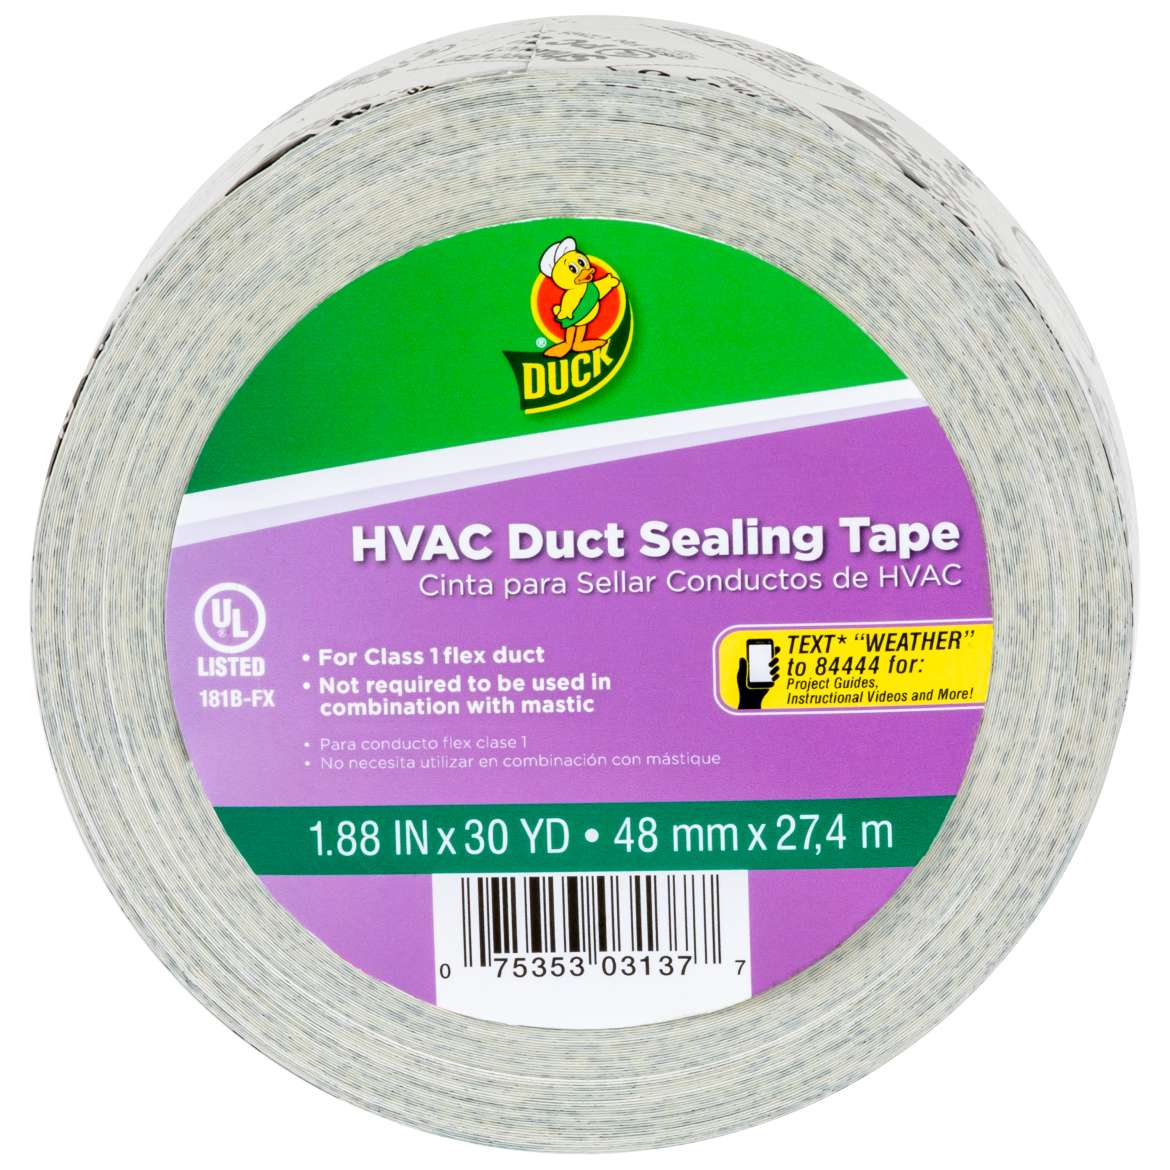 HVAC Duct Sealing Tape Image